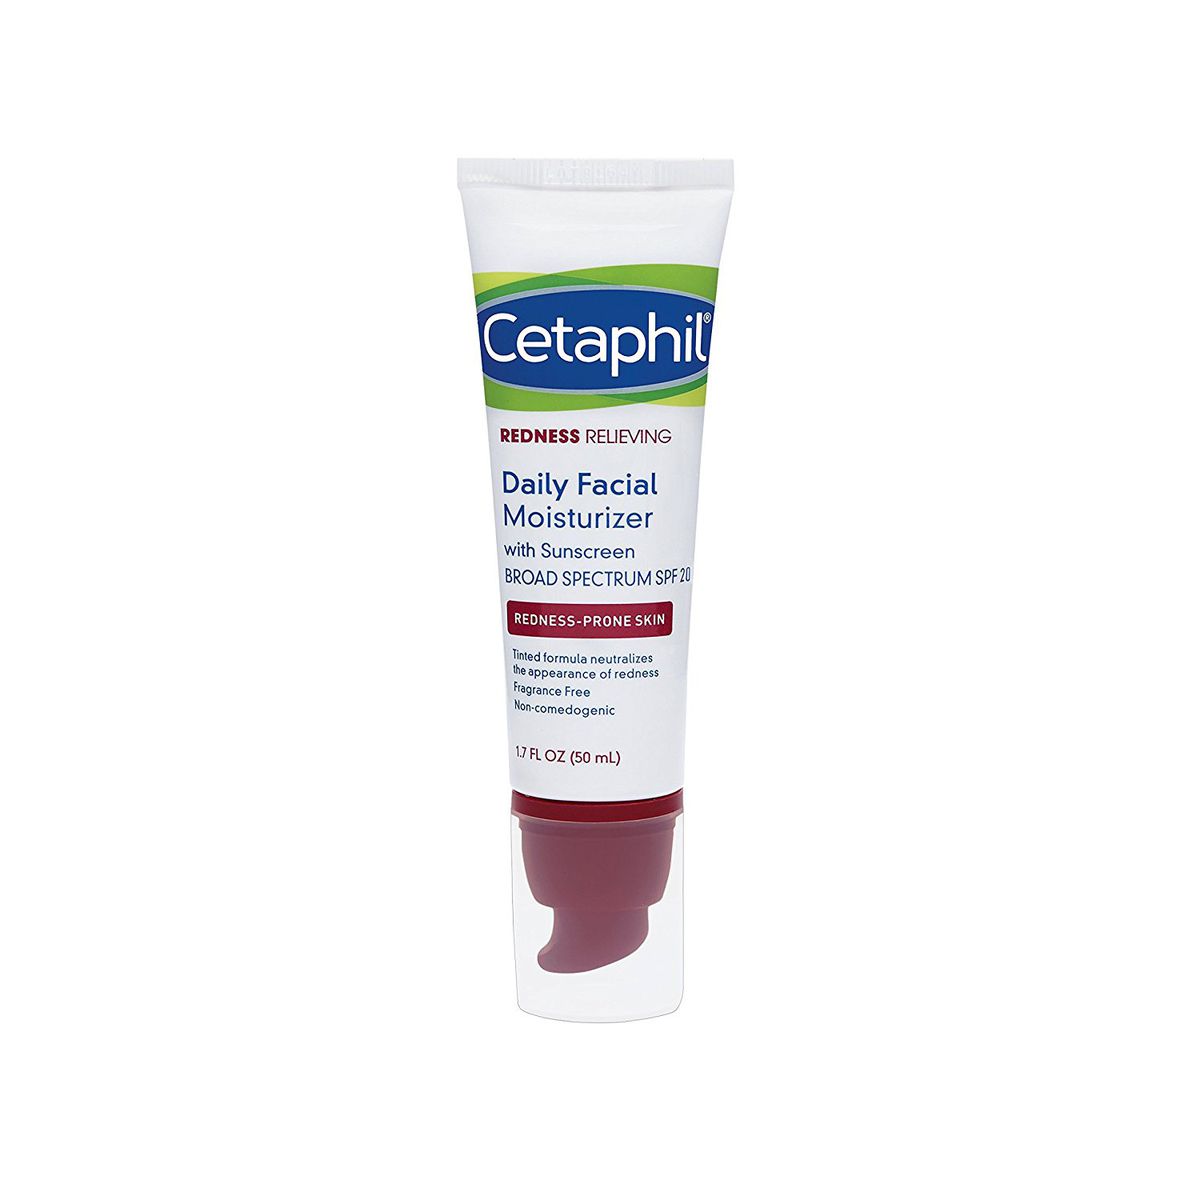 Cetaphil Redness Relieving Daily Facial Moisturizer SPF 20